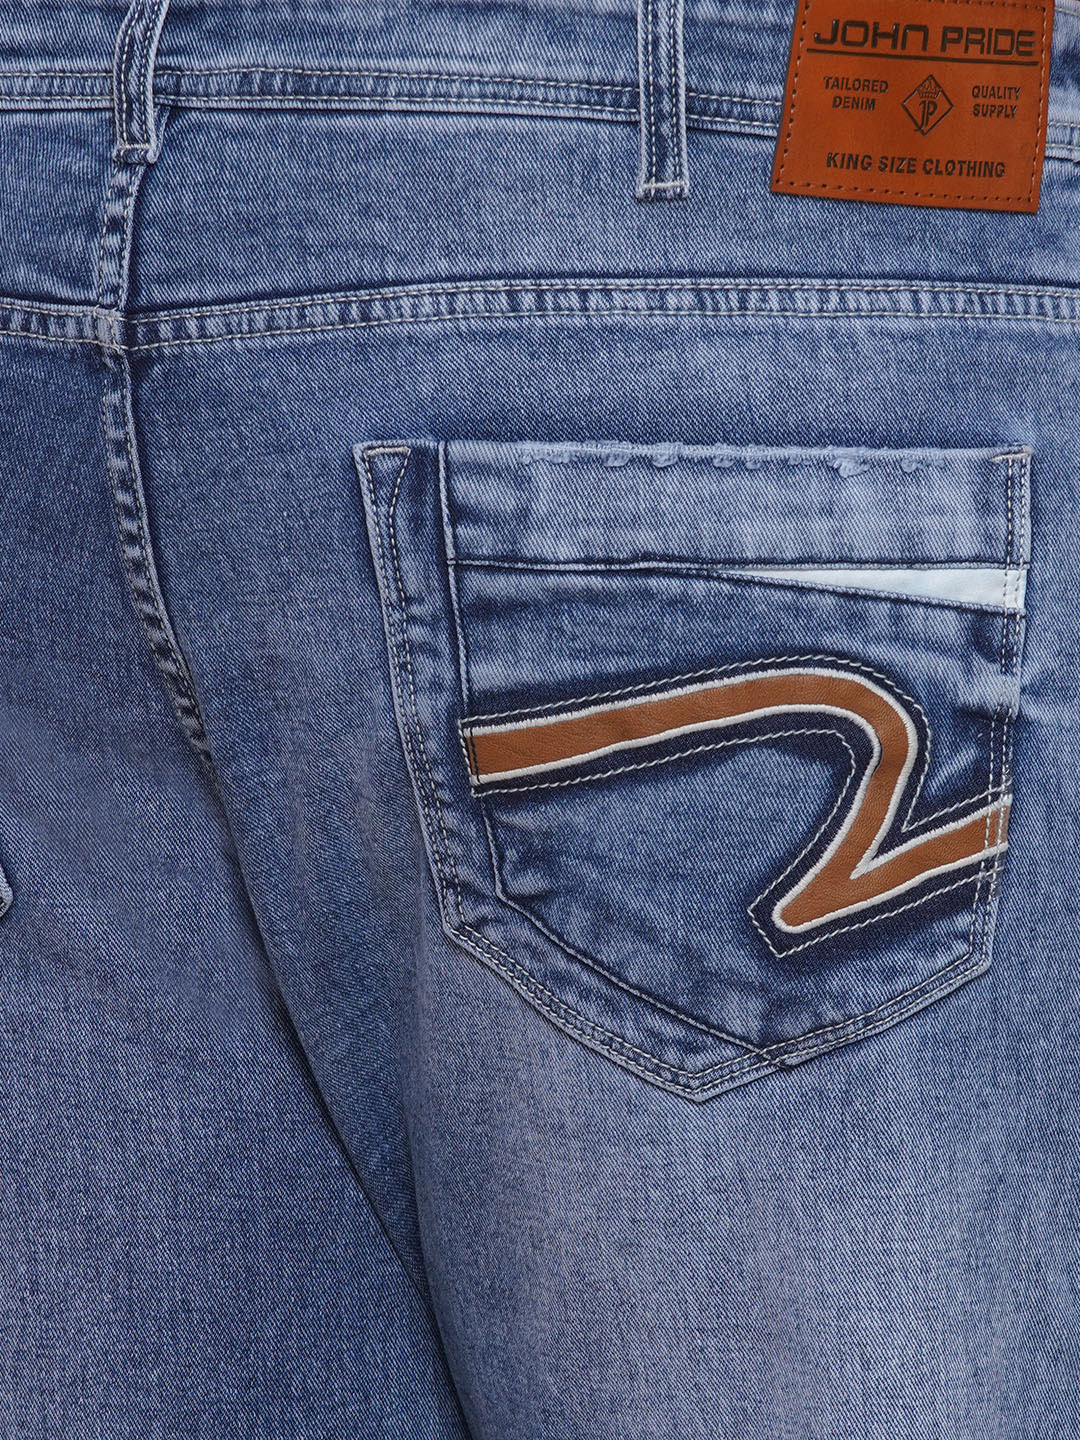 bottomwear/jeans/JPJ27001/jpj27001-2.jpg